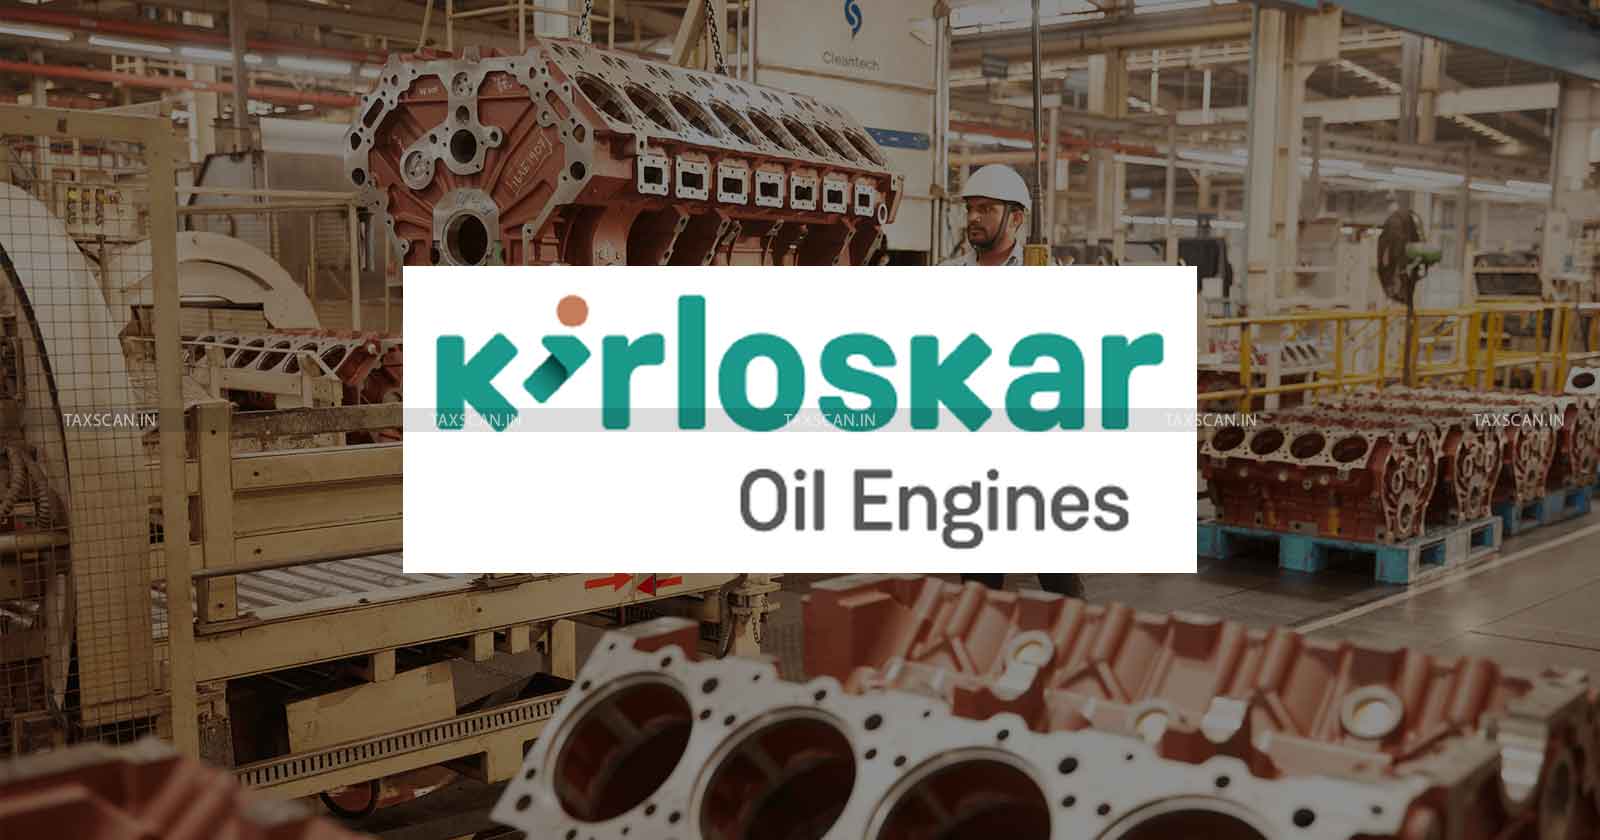 Non-issue of Notice - Notice - Non-issue of Notice of Proceeding - Kirloskar Oil Engines - Proceeding to Kirloskar Oil Engines - Bombay High Court - Order - Maharashtra Sales Tax Tribunal - taxscan